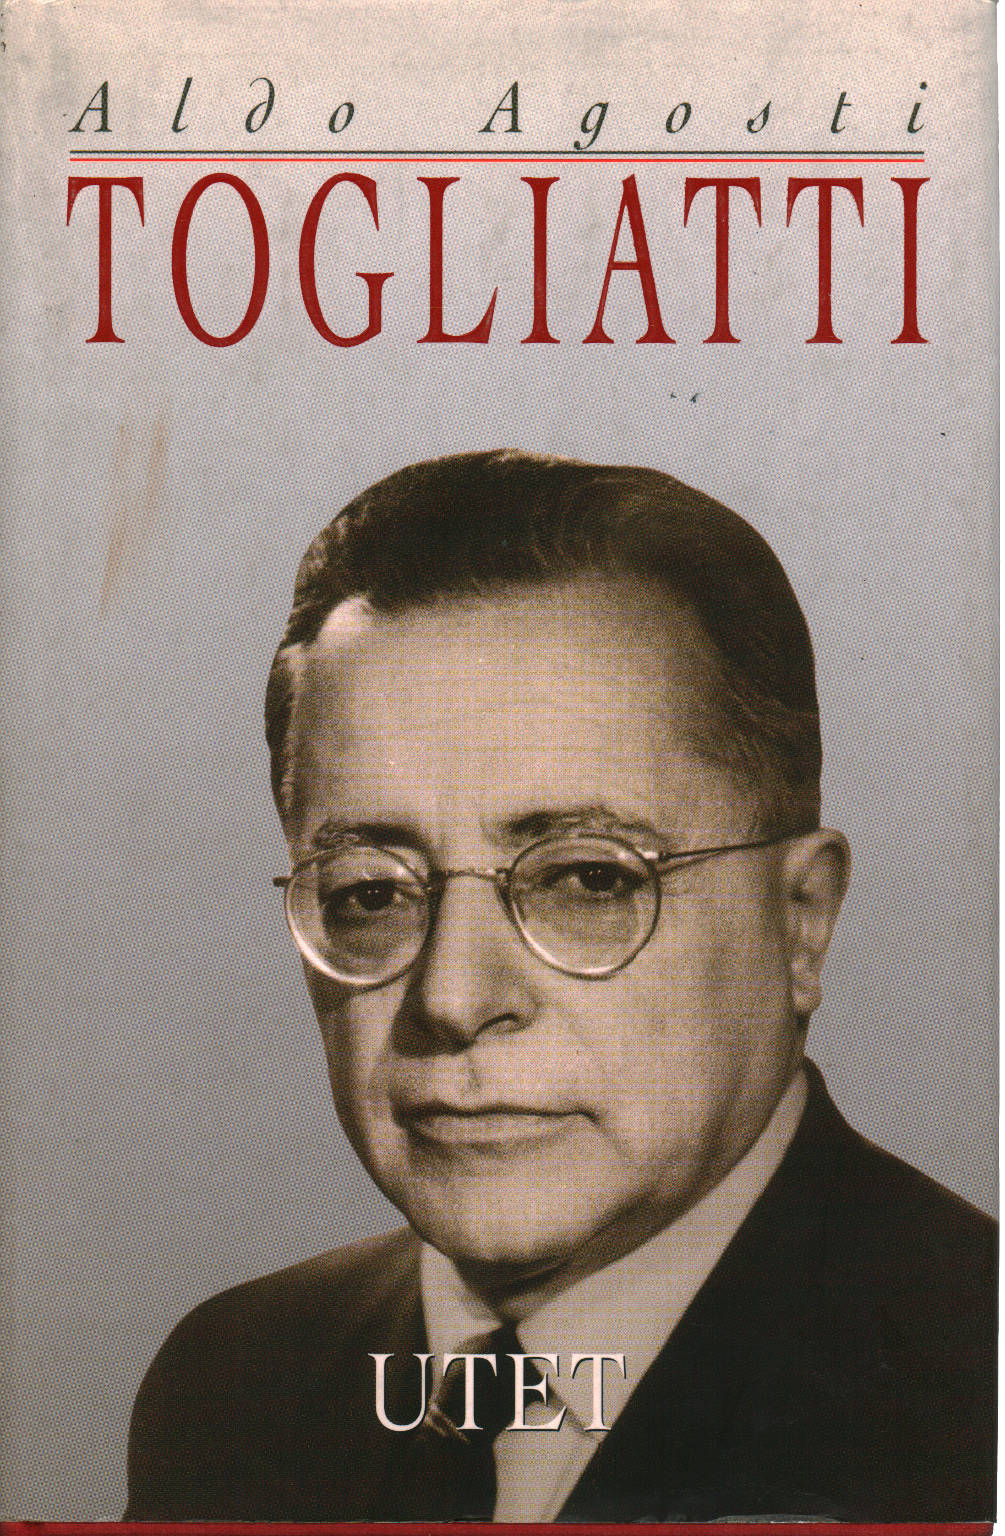 Palmiro Togliatti - Aldo Agosti - Biografie Diari e ...